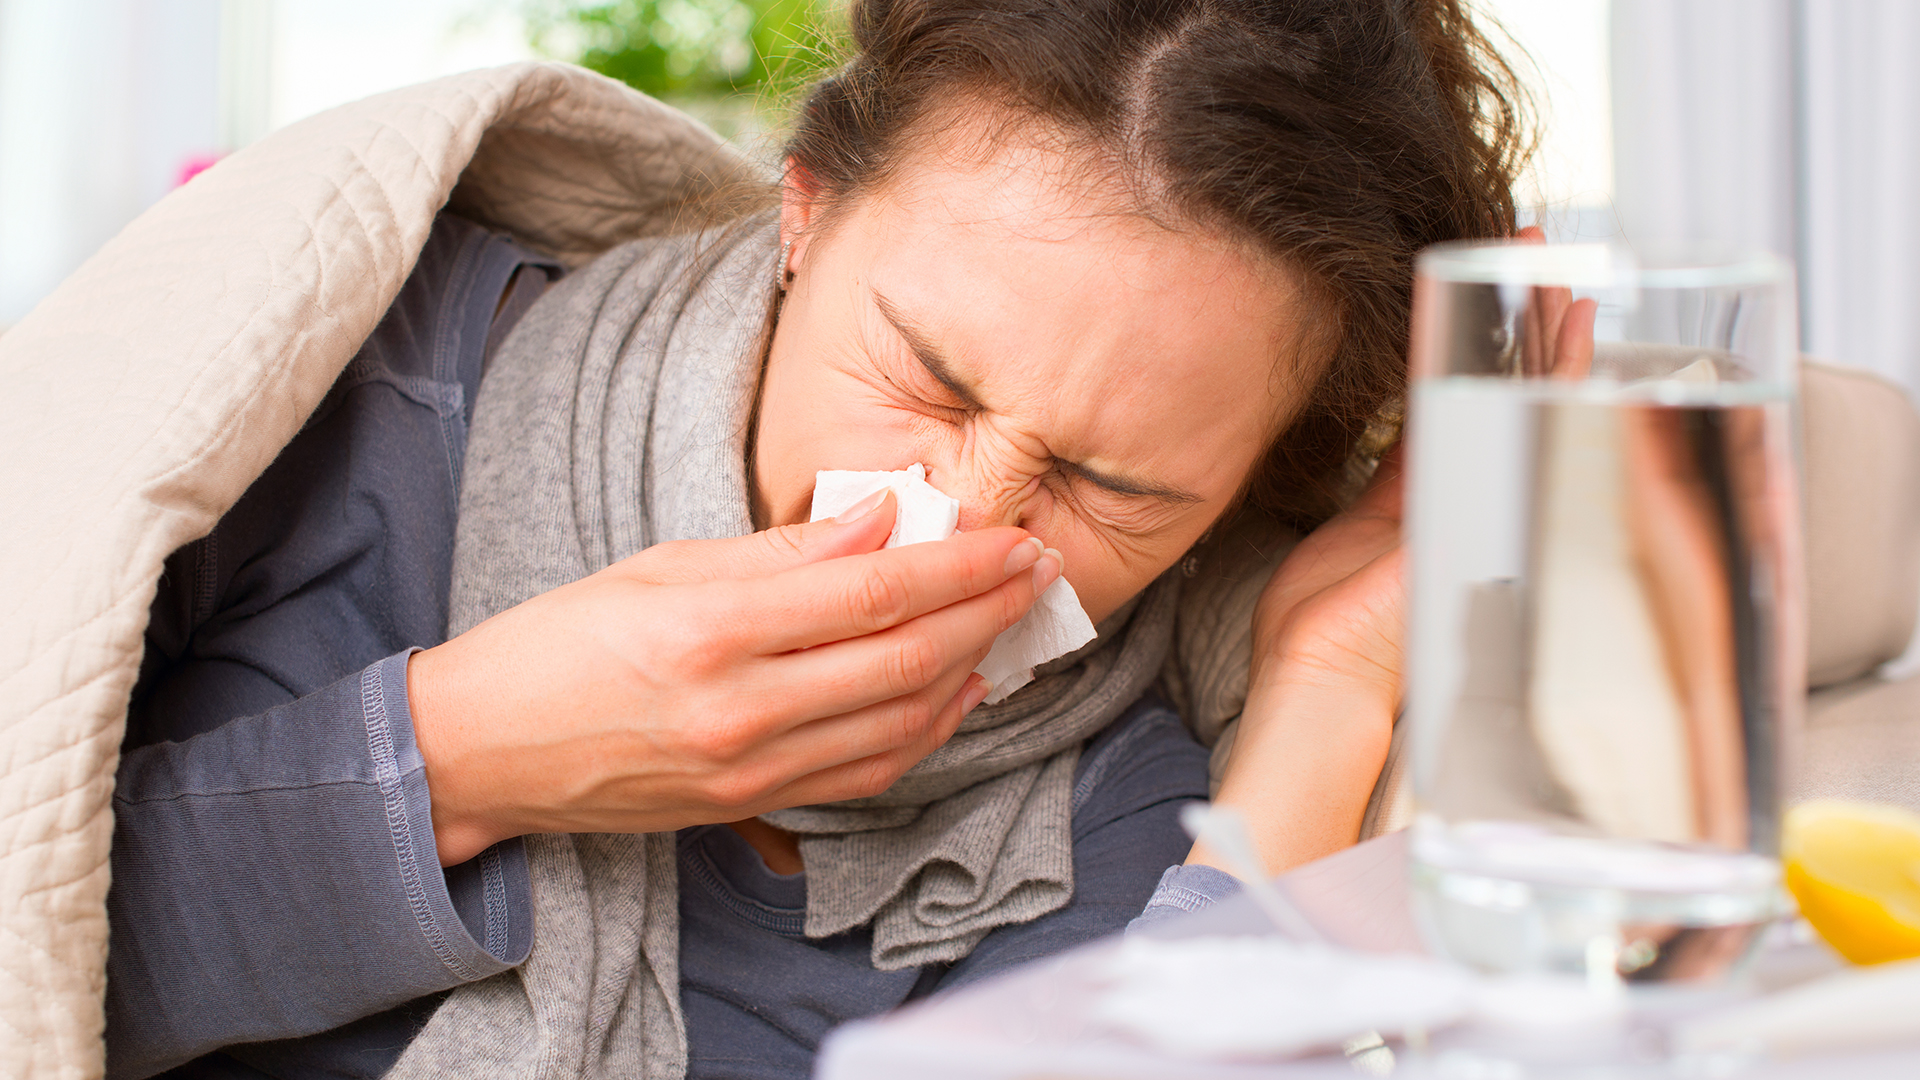 Algunos síntomas de la alergia, el resfrío, la gripe y el COVID-19 pueden parecerse (Shutterstock)